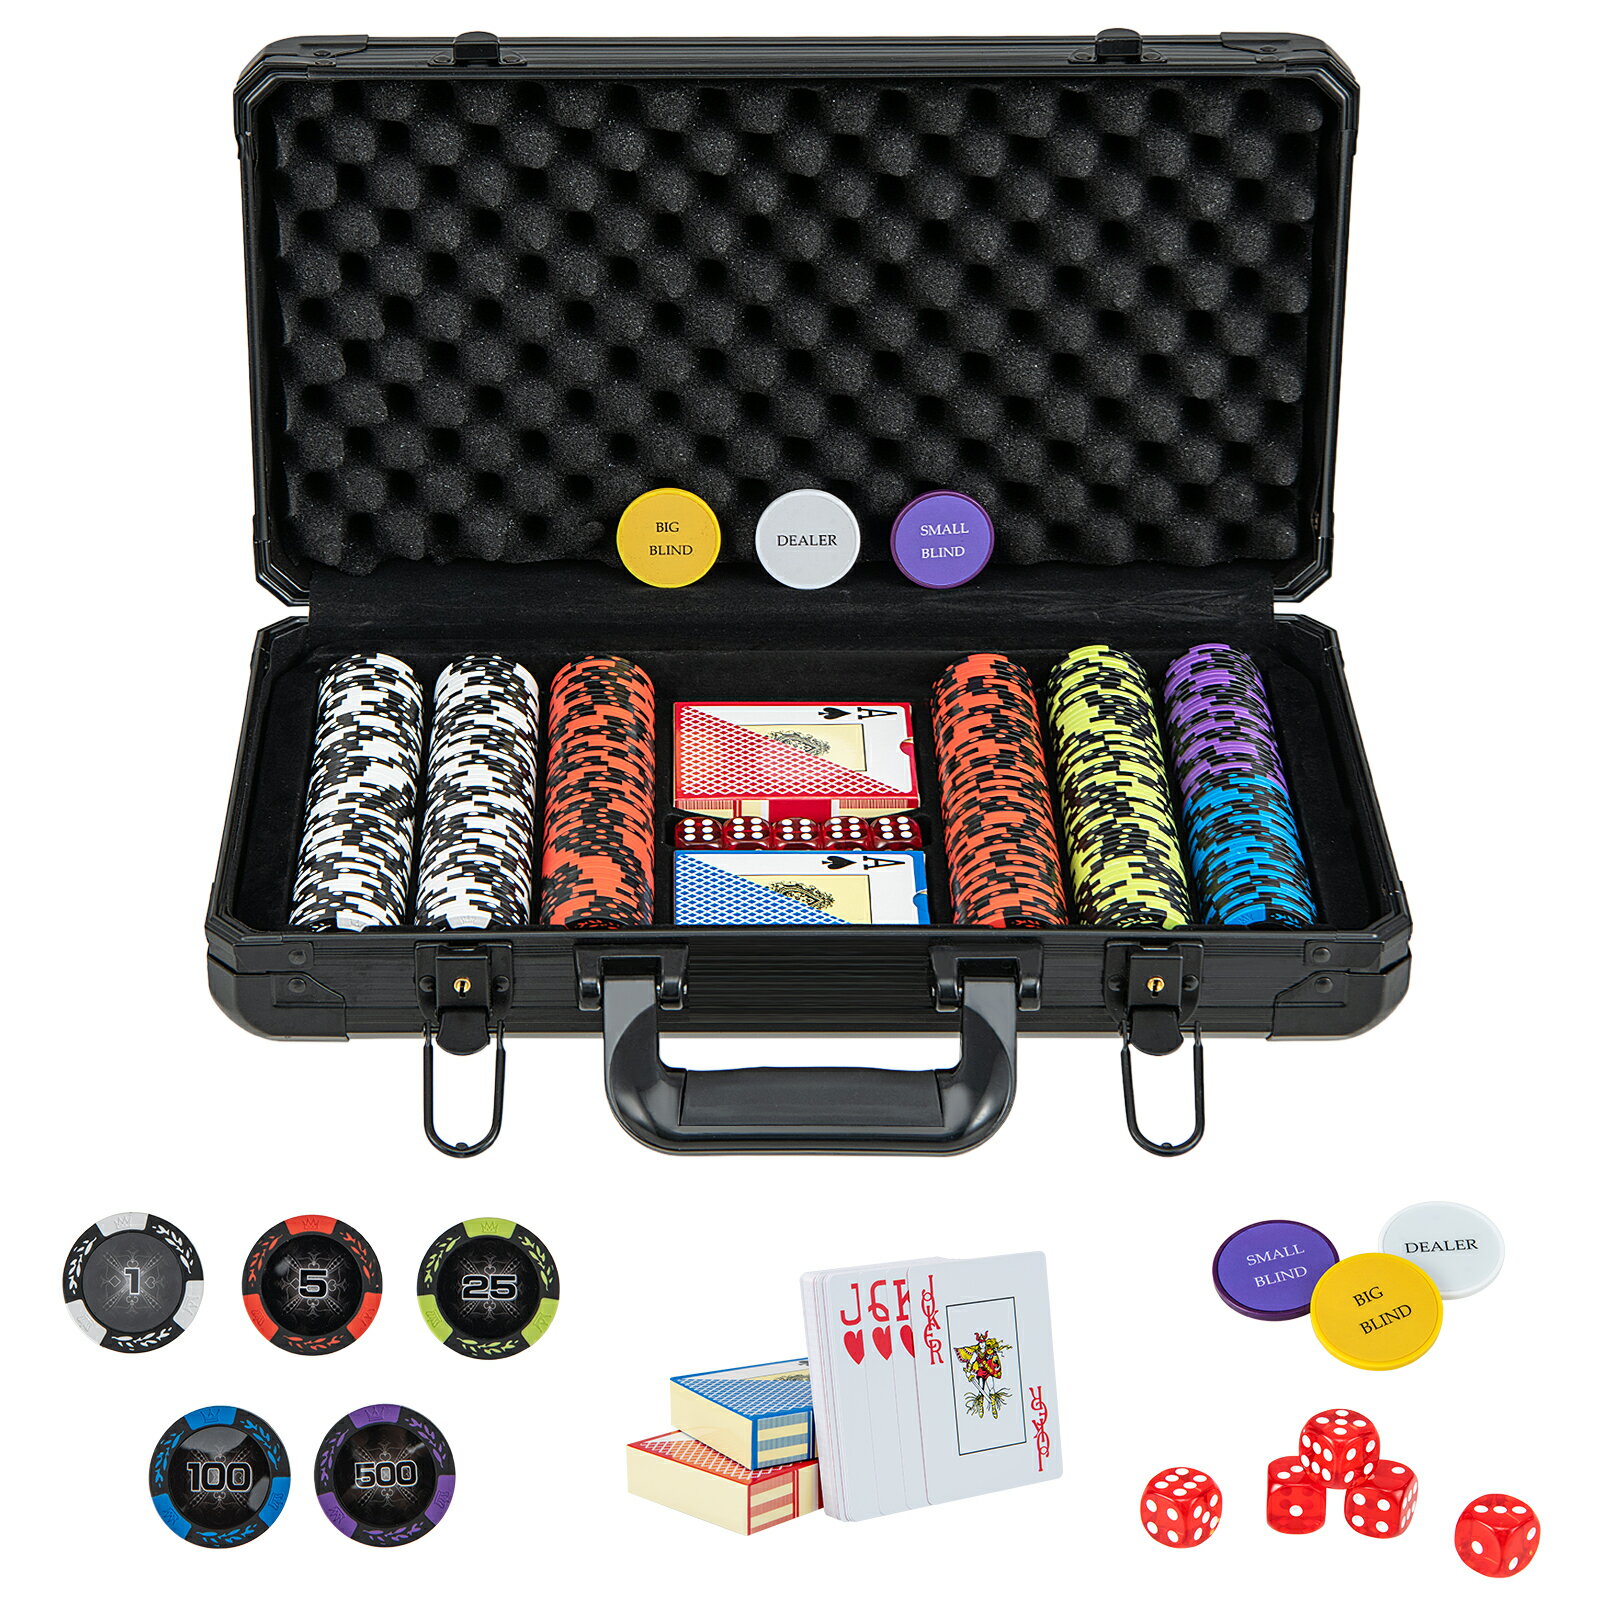 数字入り 重さ14g チップ300枚 ポーカーセット プラスチックトランプ ポーカーチップ カジノチップ テーブルゲーム カジノセット ブラックケース